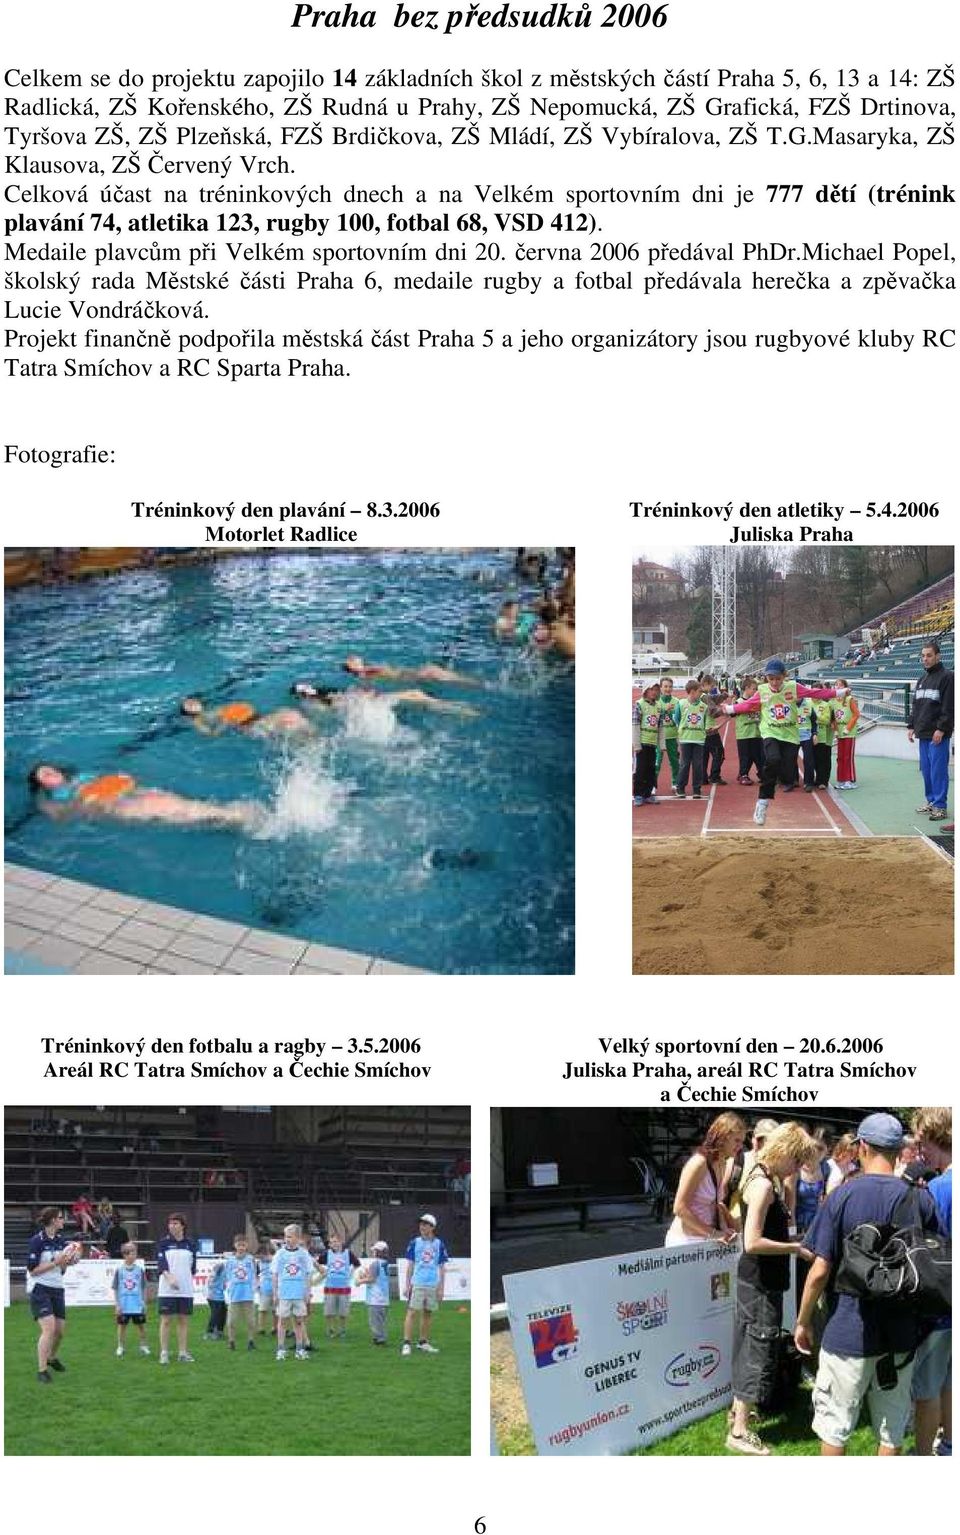 Celková účast na tréninkových dnech a na Velkém sportovním dni je 777 dětí (trénink plavání 74, atletika 123, rugby 100, fotbal 68, VSD 412). Medaile plavcům při Velkém sportovním dni 20.